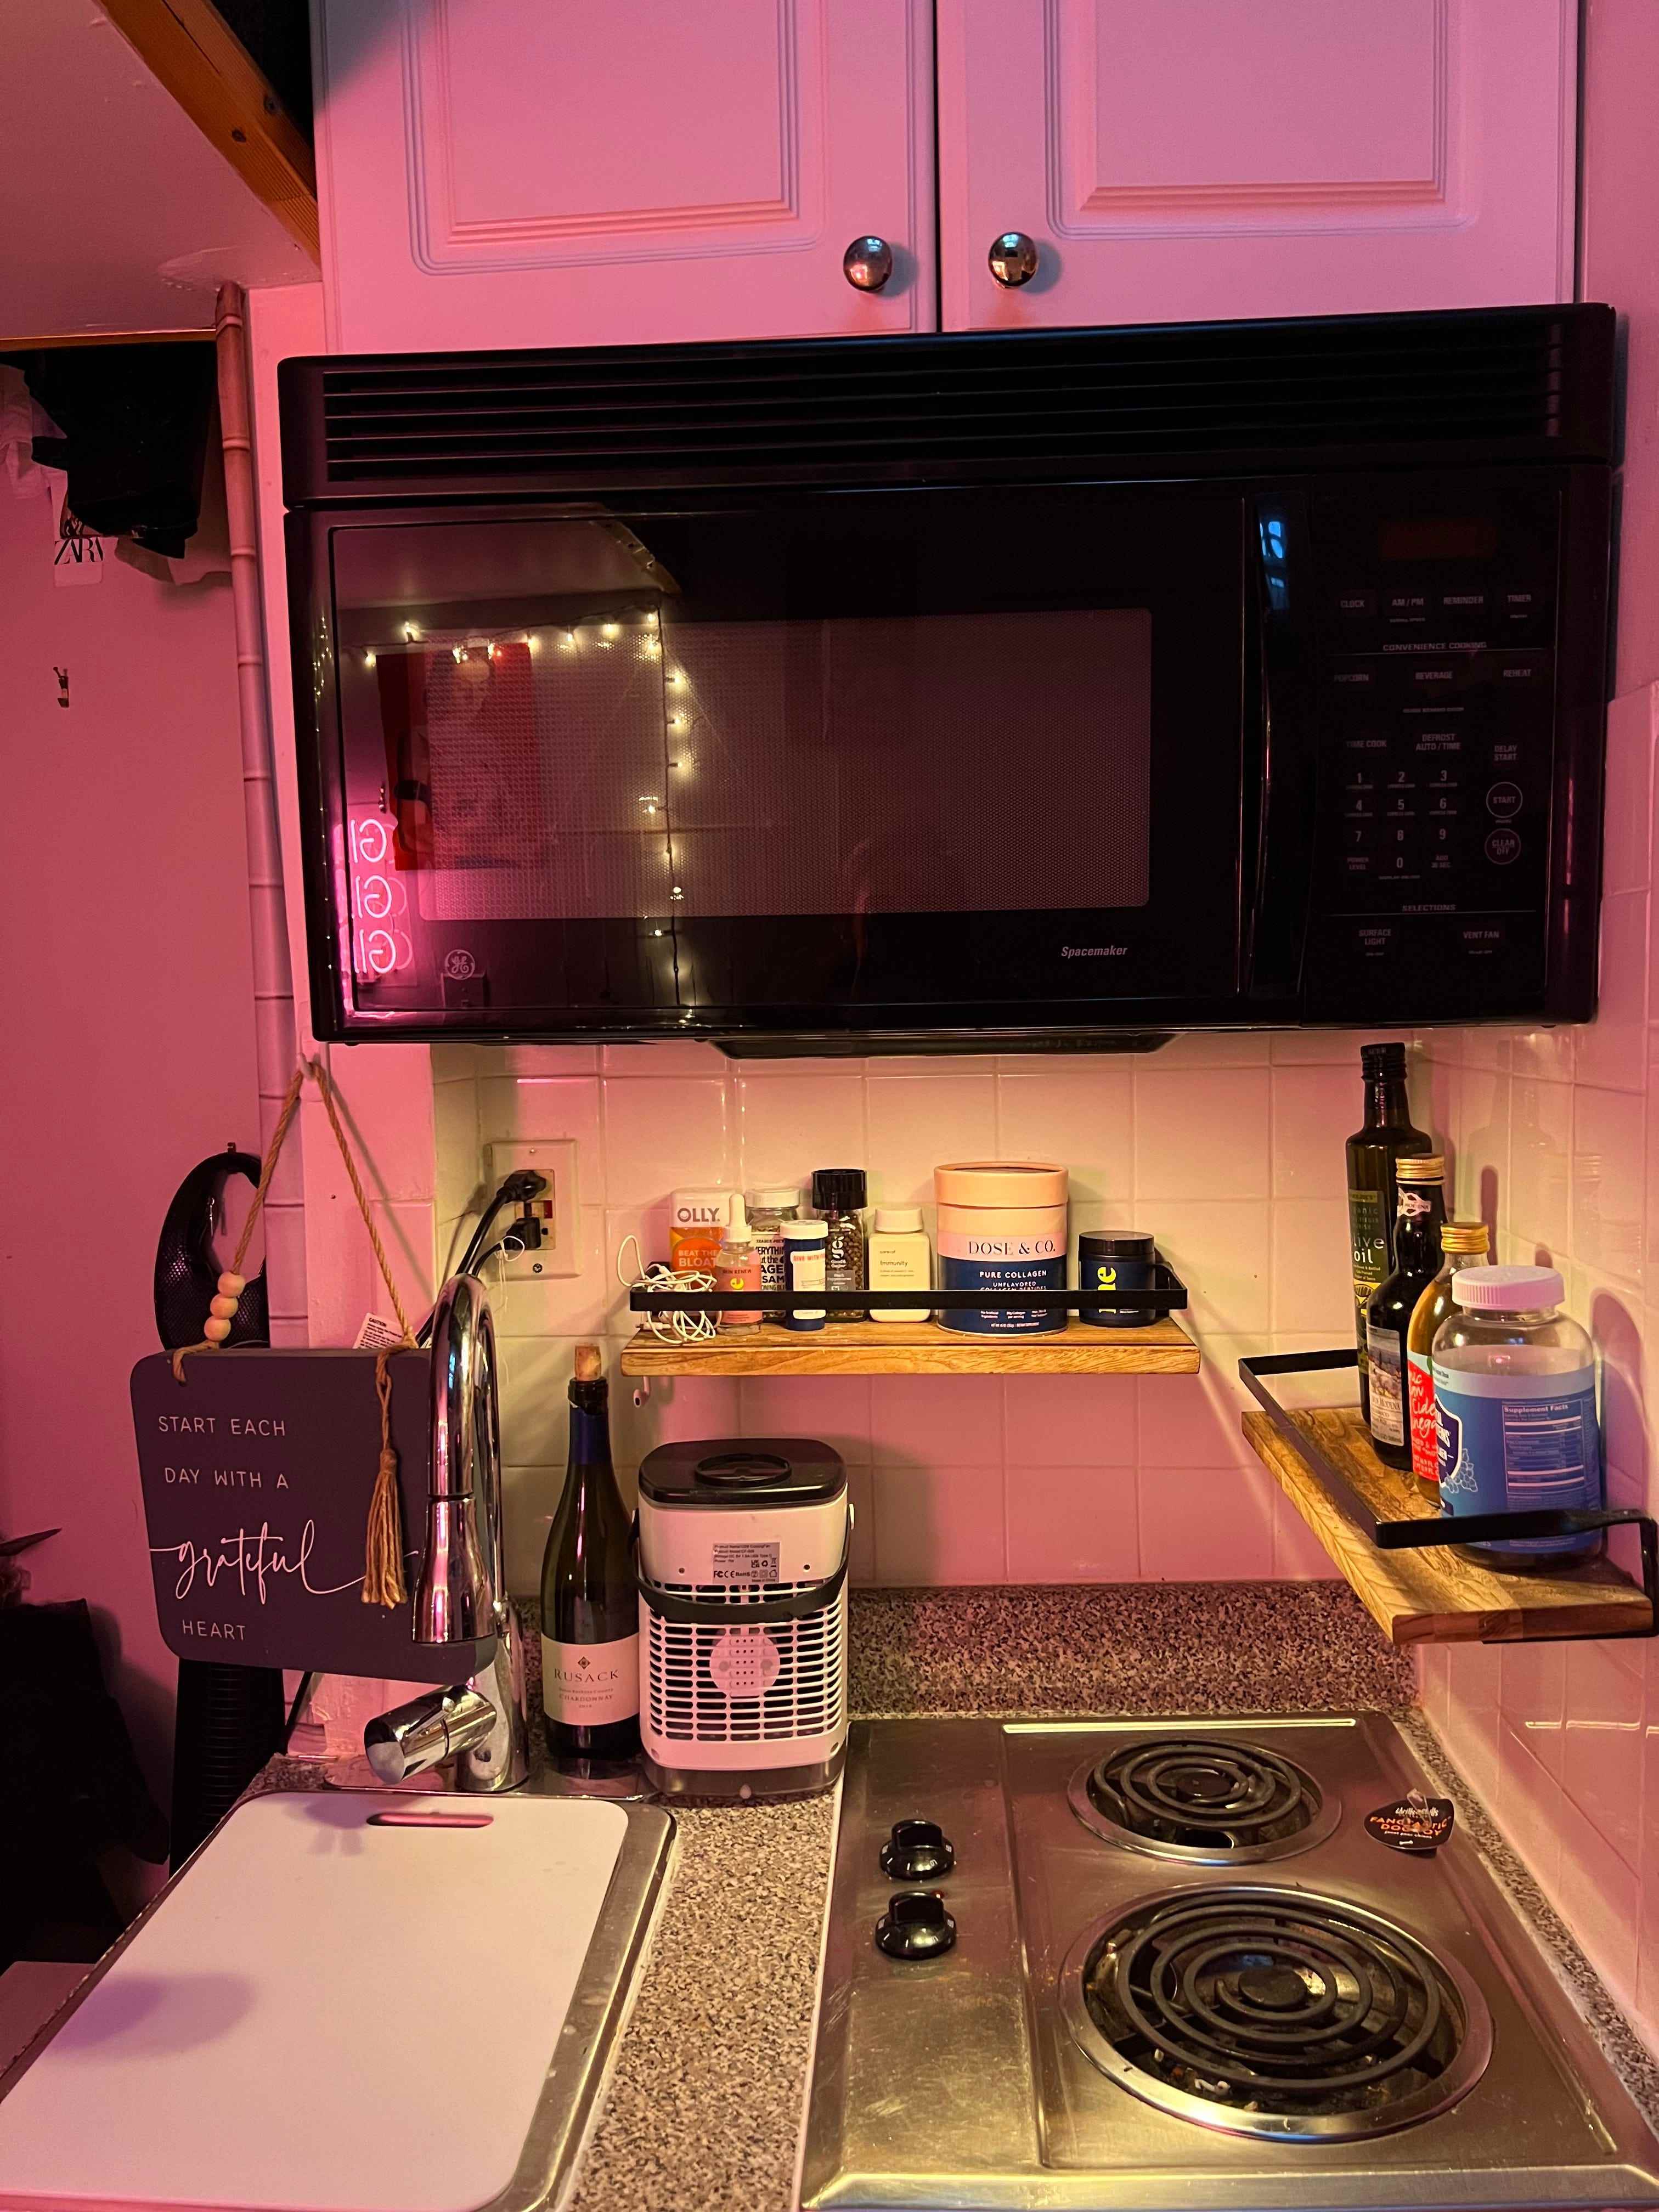 Die Küche von Alaina Randazzos 650-Dollar-Wohnung mit Mikrowelle und Zwei-Flammen-Herd